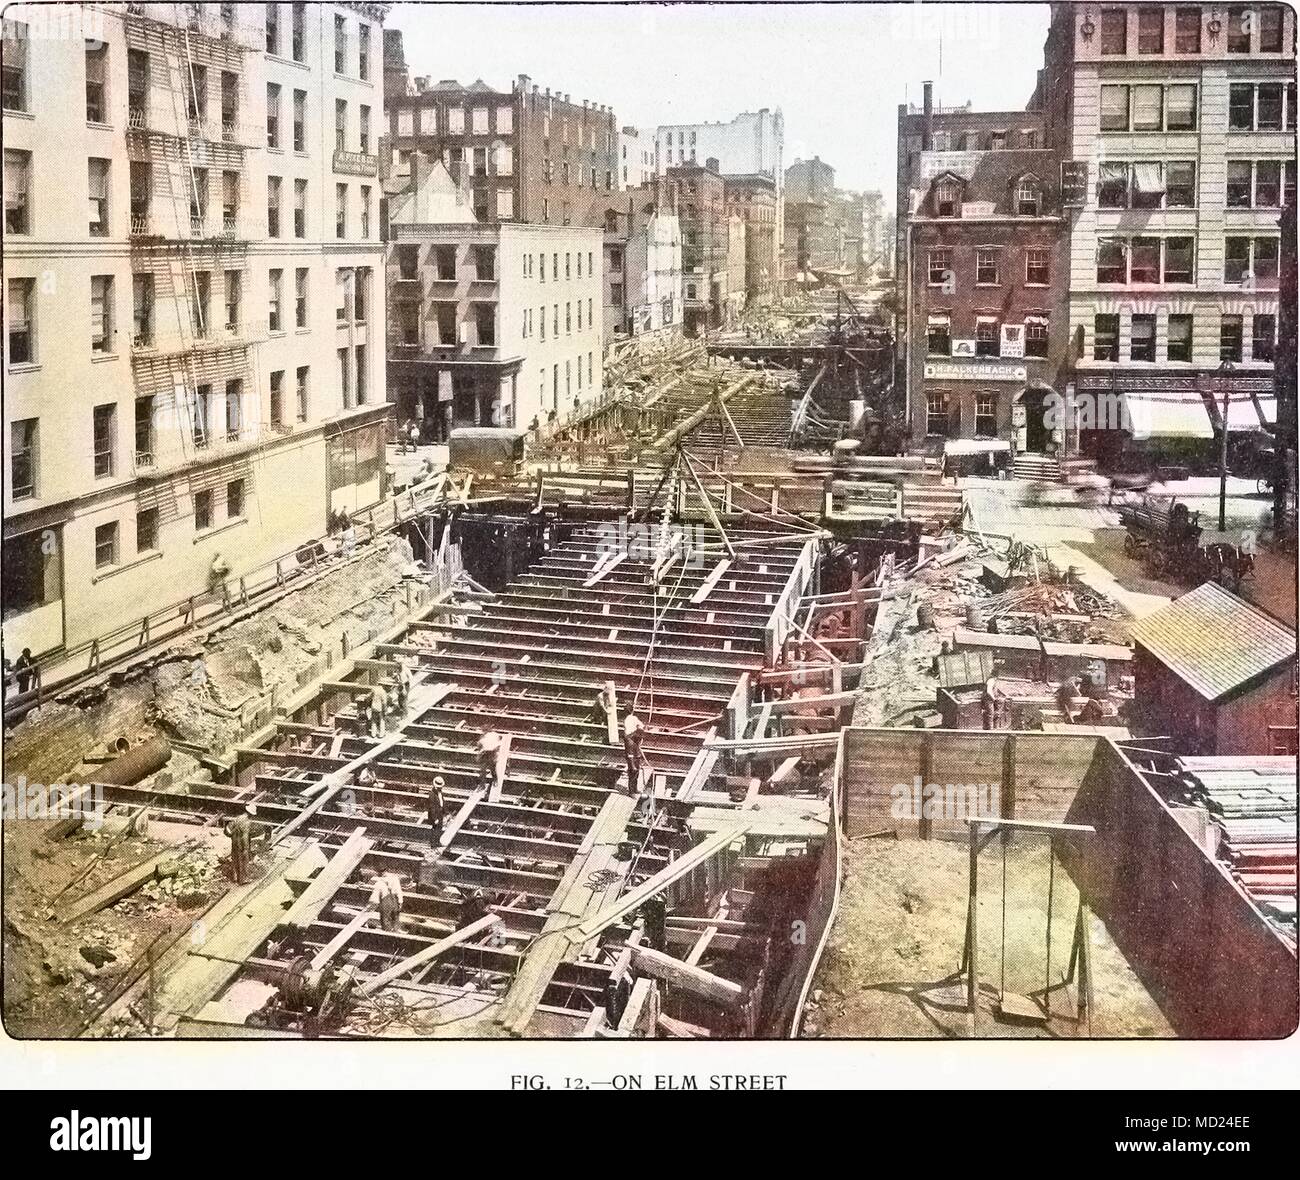 La Photogravure de construction de New York City's première ligne de métro, le long d'Elm Street et Lafayette Place, 1901. Avec la permission de Internet Archive. Remarque : l'image a été colorisée numériquement à l'aide d'un processus moderne. Les couleurs peuvent ne pas être exacts à l'autre. () Banque D'Images